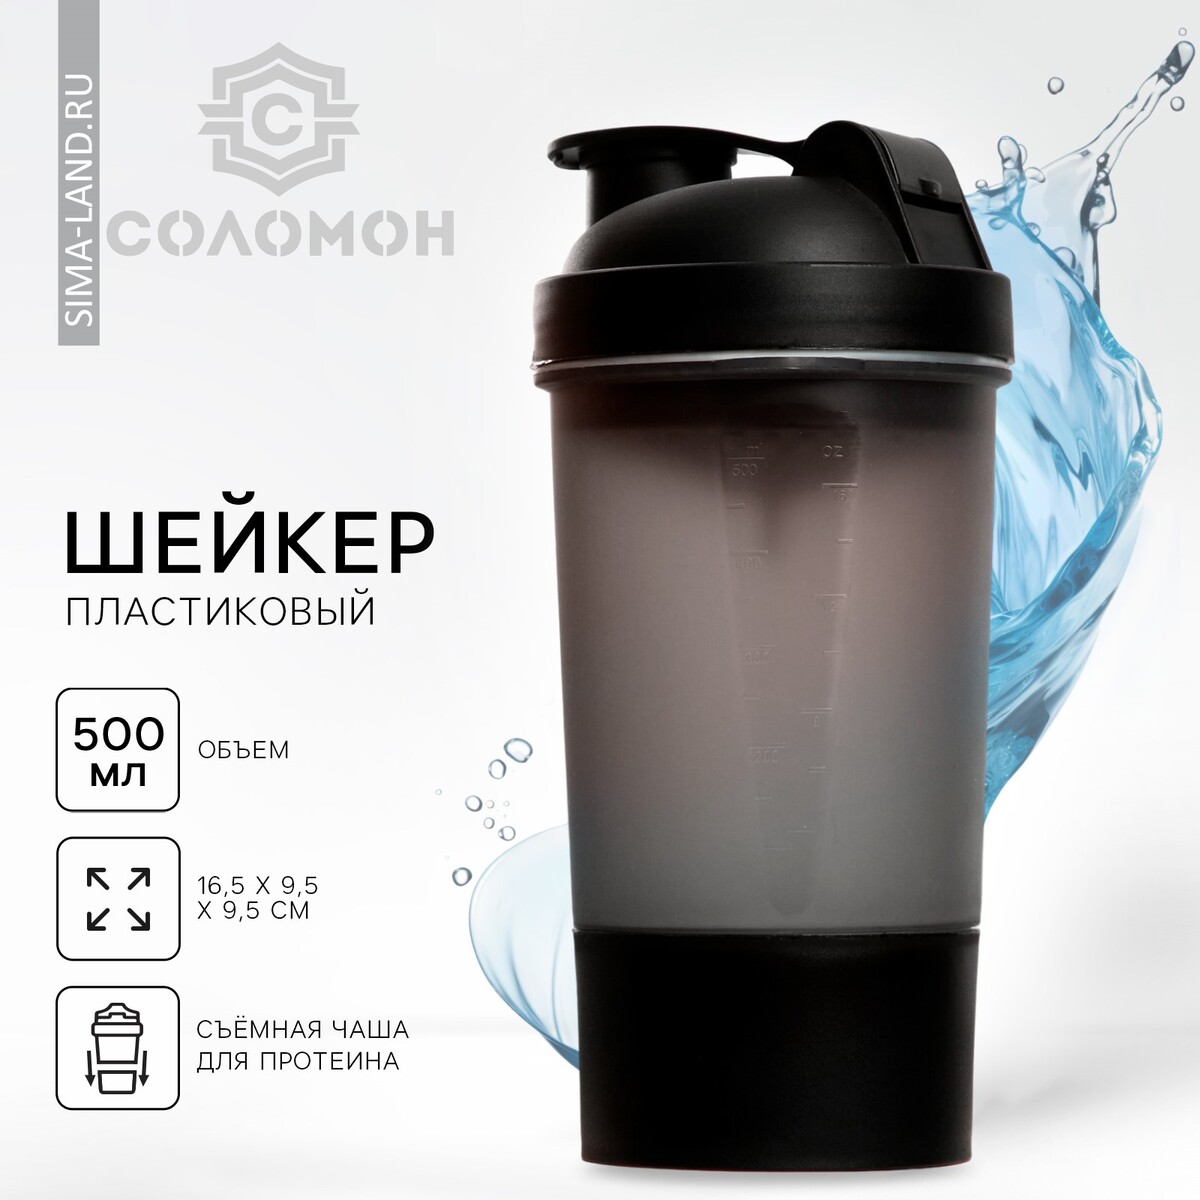 Шейкер спортивный с чашей под протеин, черный, 500 мл спортивный топ с чашками вкладышами